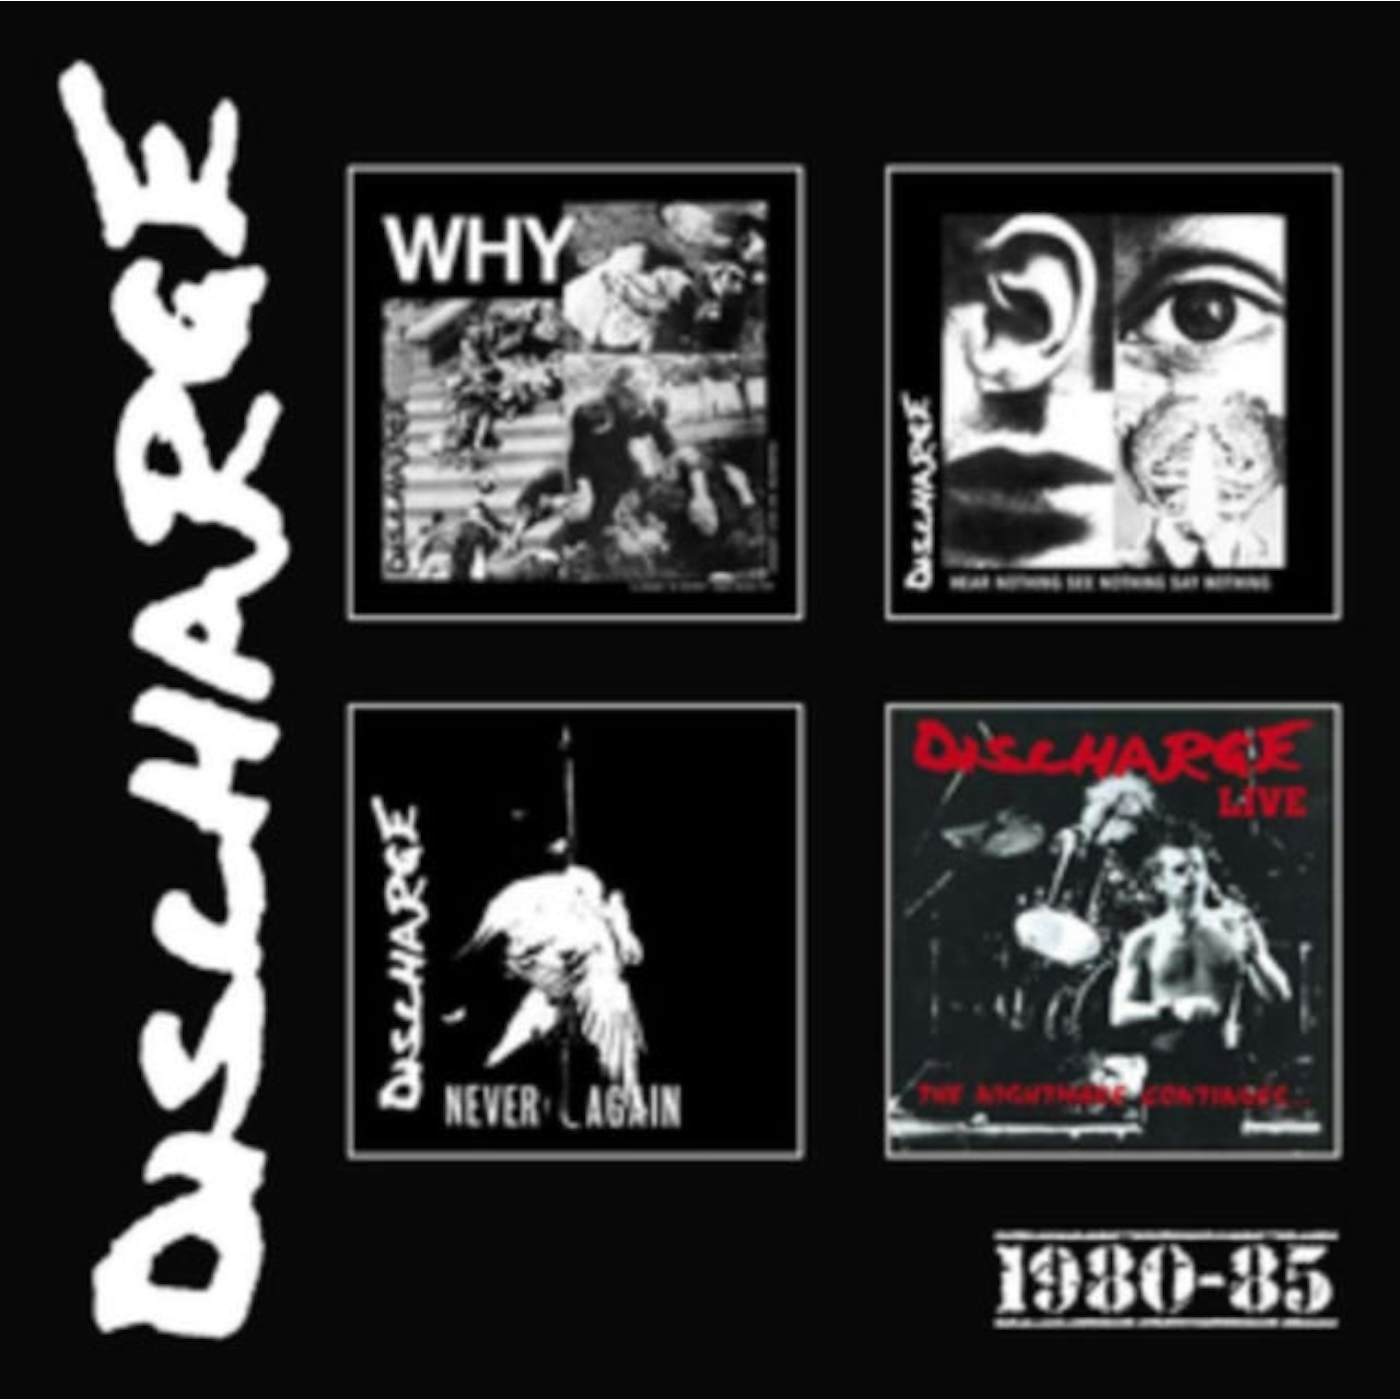 Discharge CD - 19 80-85